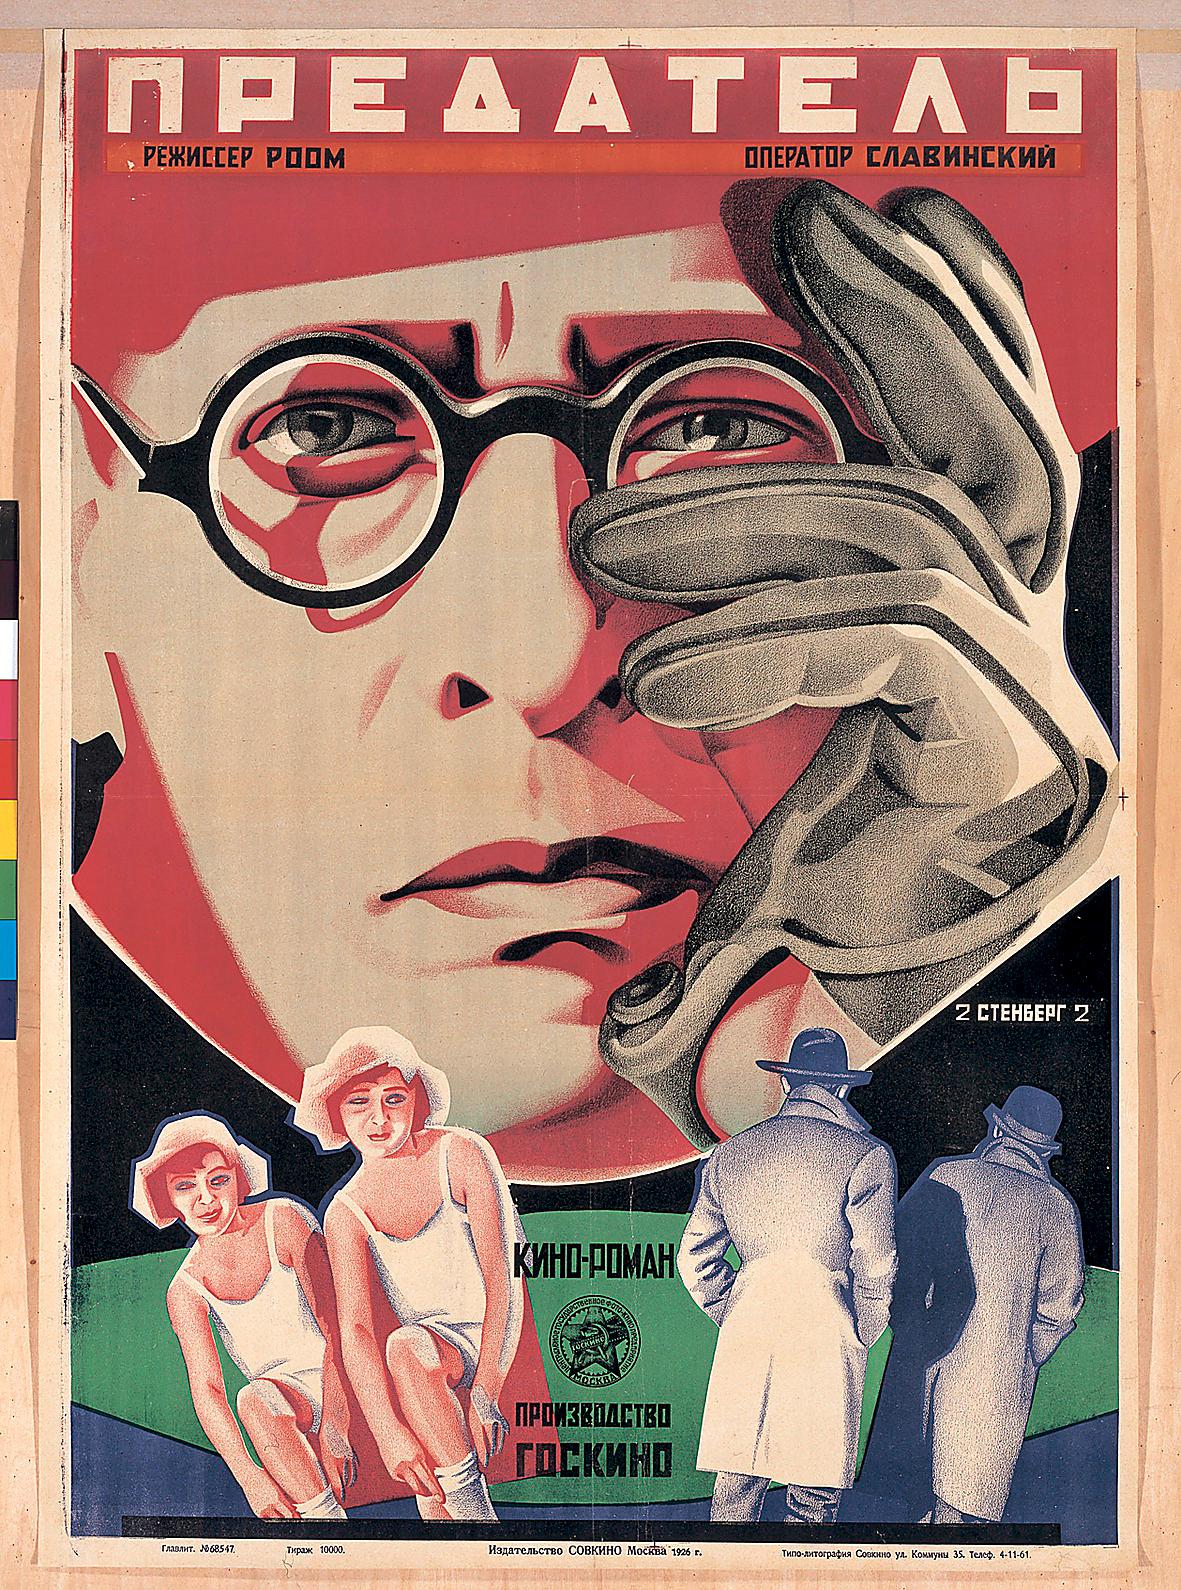 ”The Traitor”, Georgij och Vladimir Stenberg, 1929.